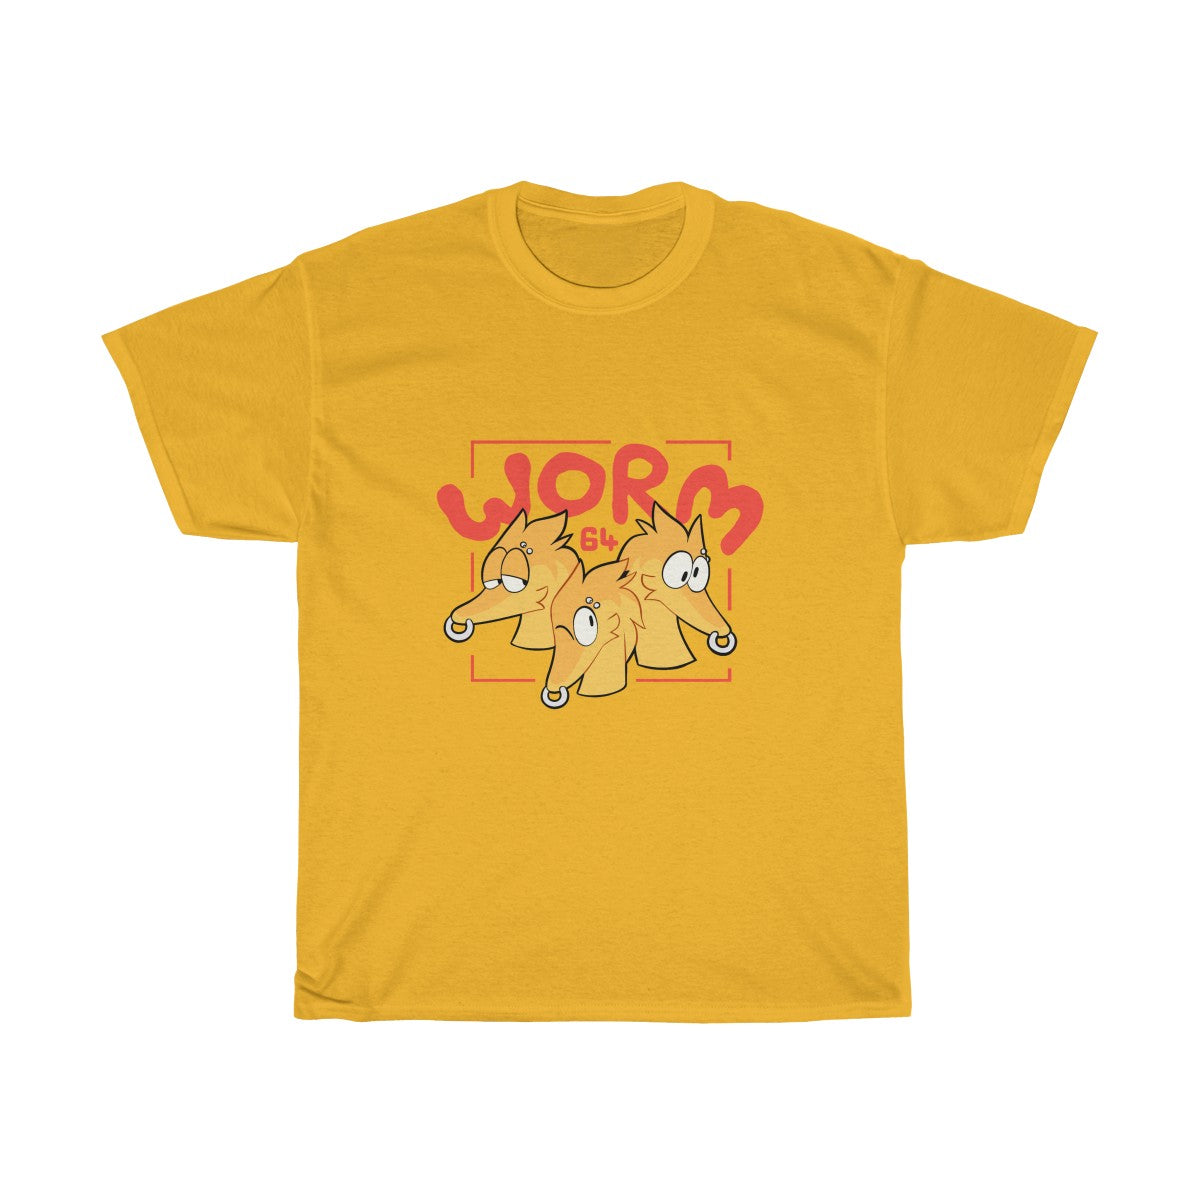 Worm 64 - T-Shirt T-Shirt Motfal Gold S 